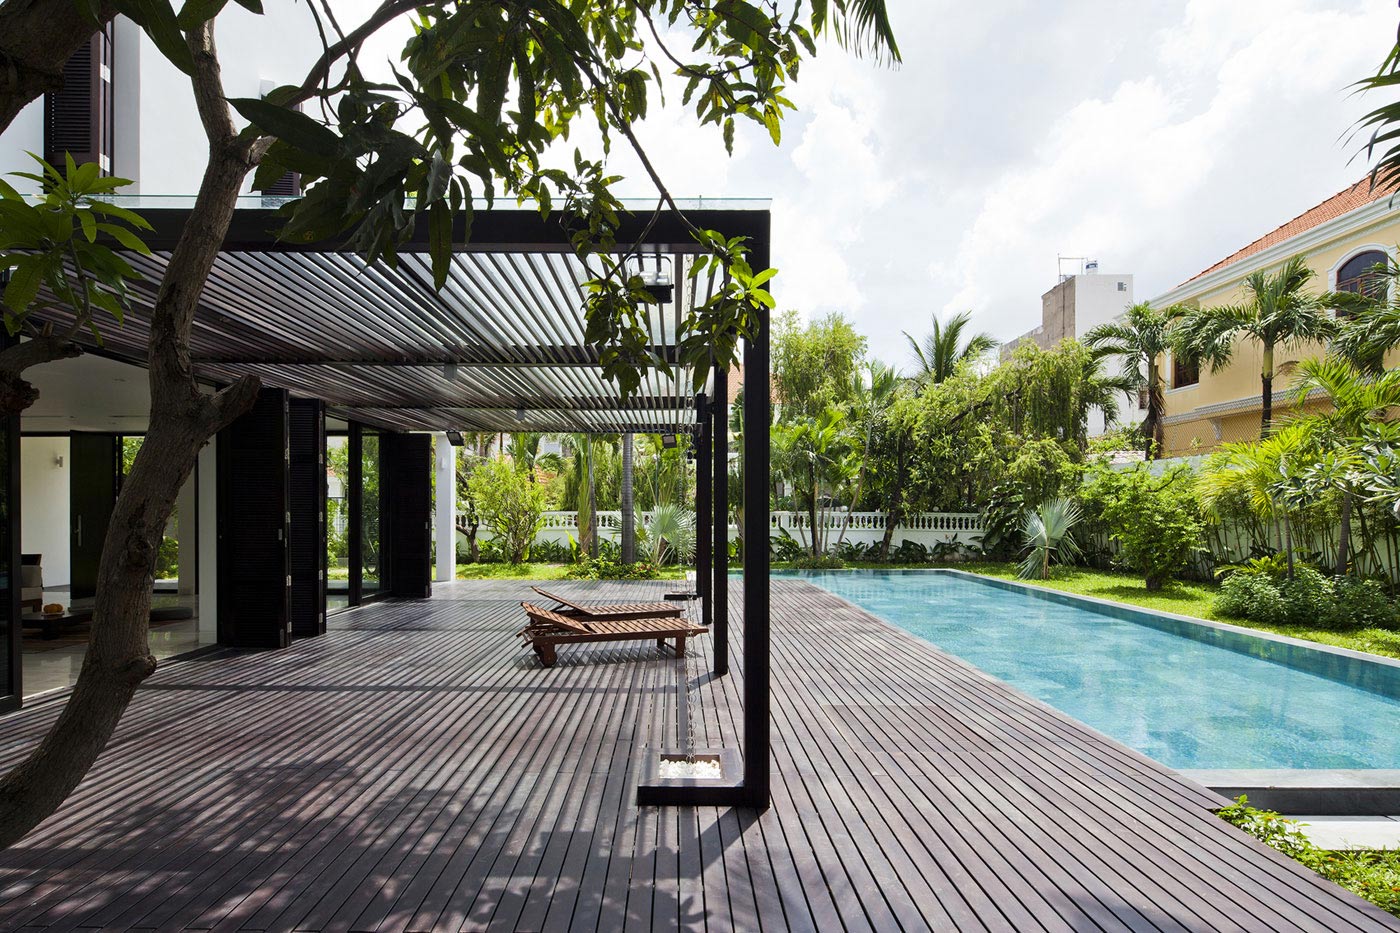 Wooden Terrace, Pool